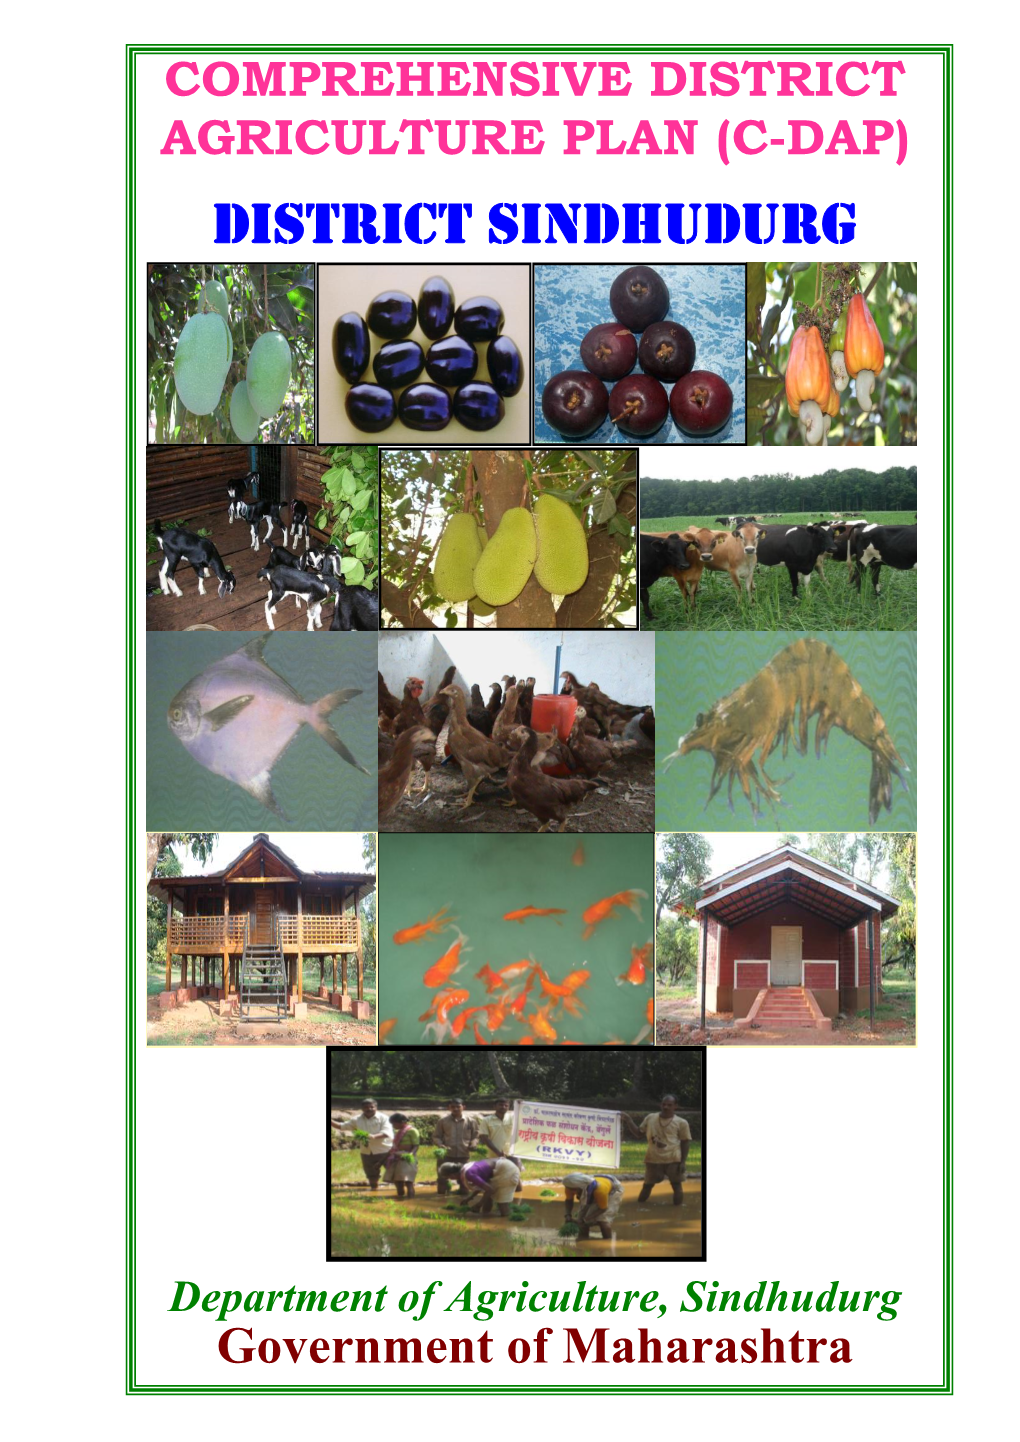 District Sindhudurg